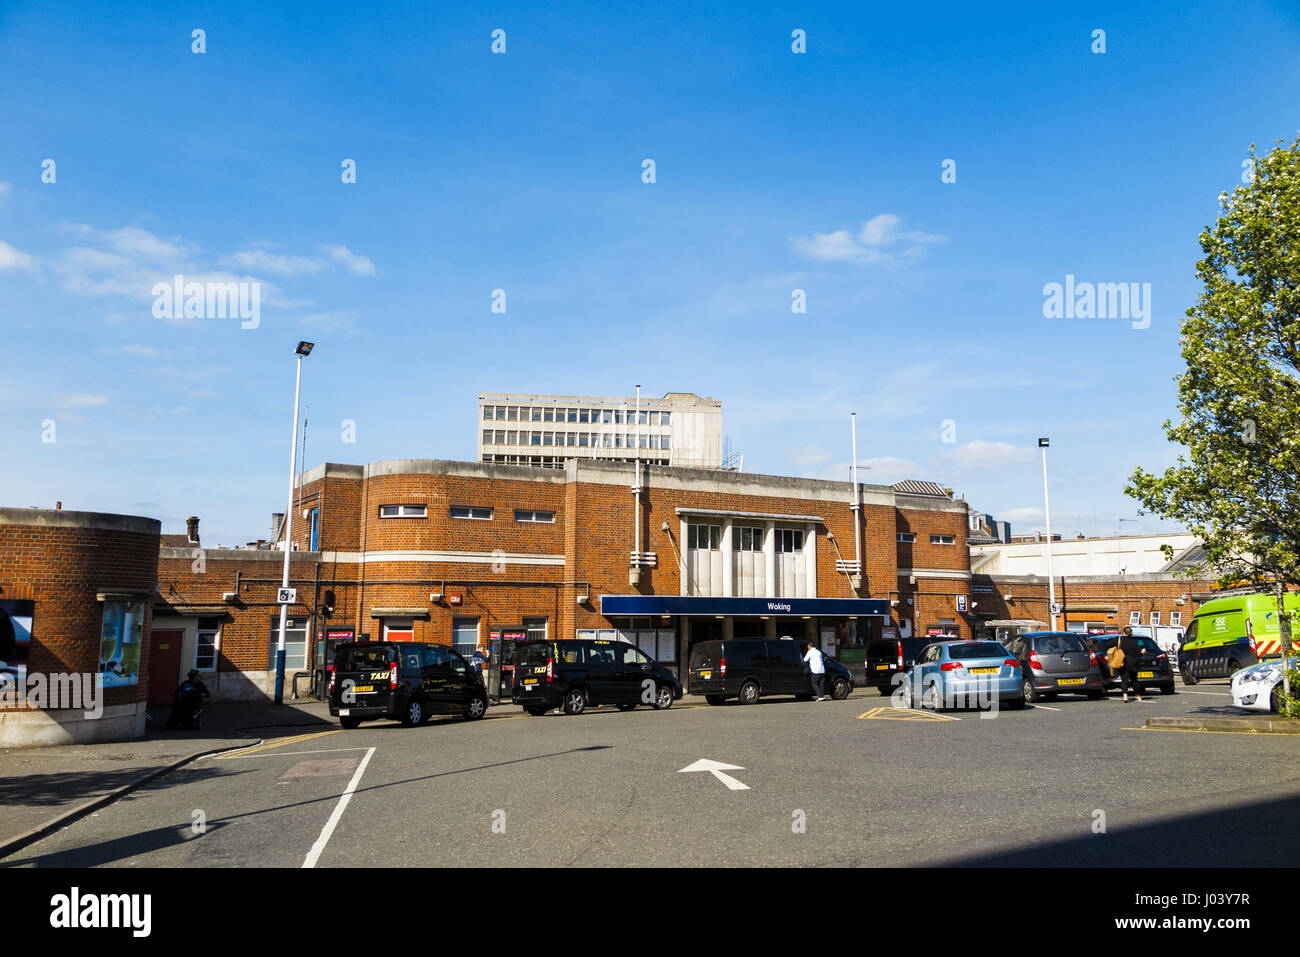 La gare de Woking, Woking, Surrey, au sud-est de l'Angleterre, Royaume-Uni, journée ensoleillée avec ciel bleu, à l'extérieur d'attente des taxis Banque D'Images